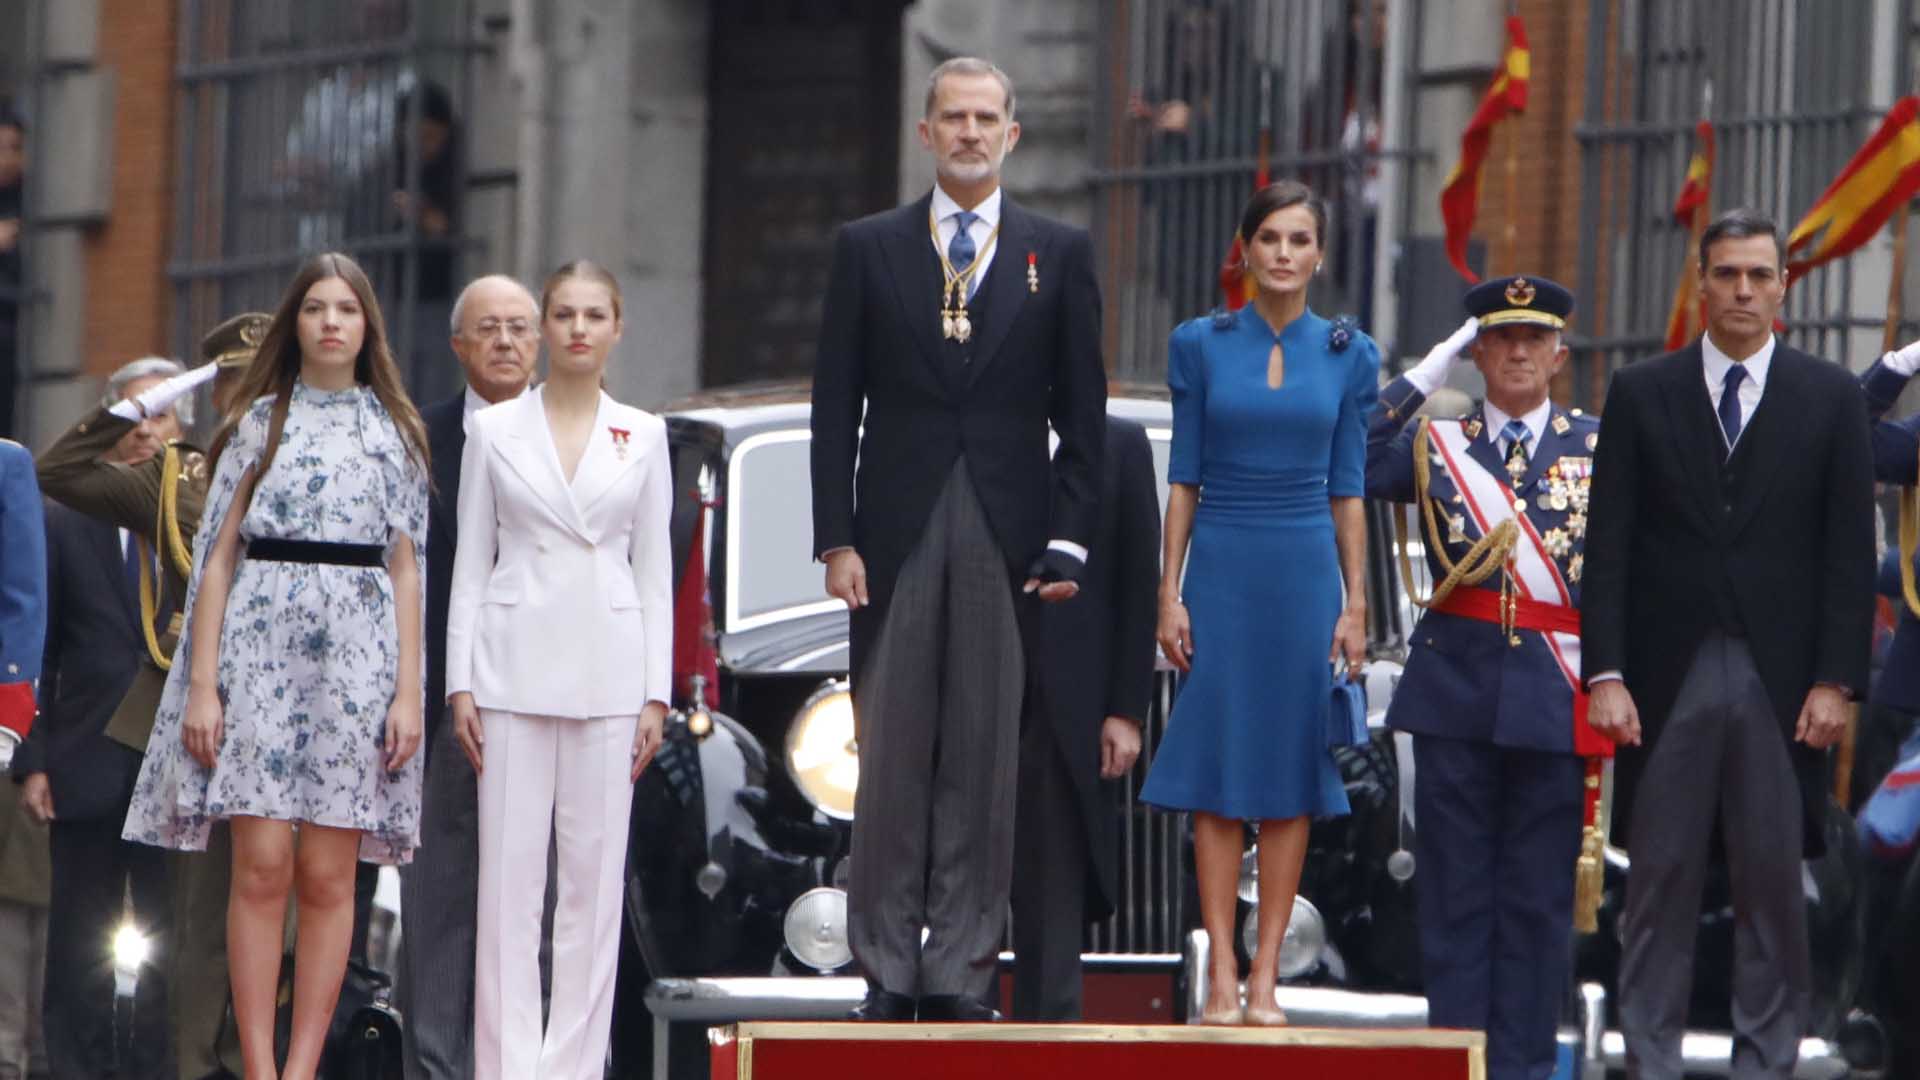 Leonor y la familia real antes de entrar a jurar Constitución